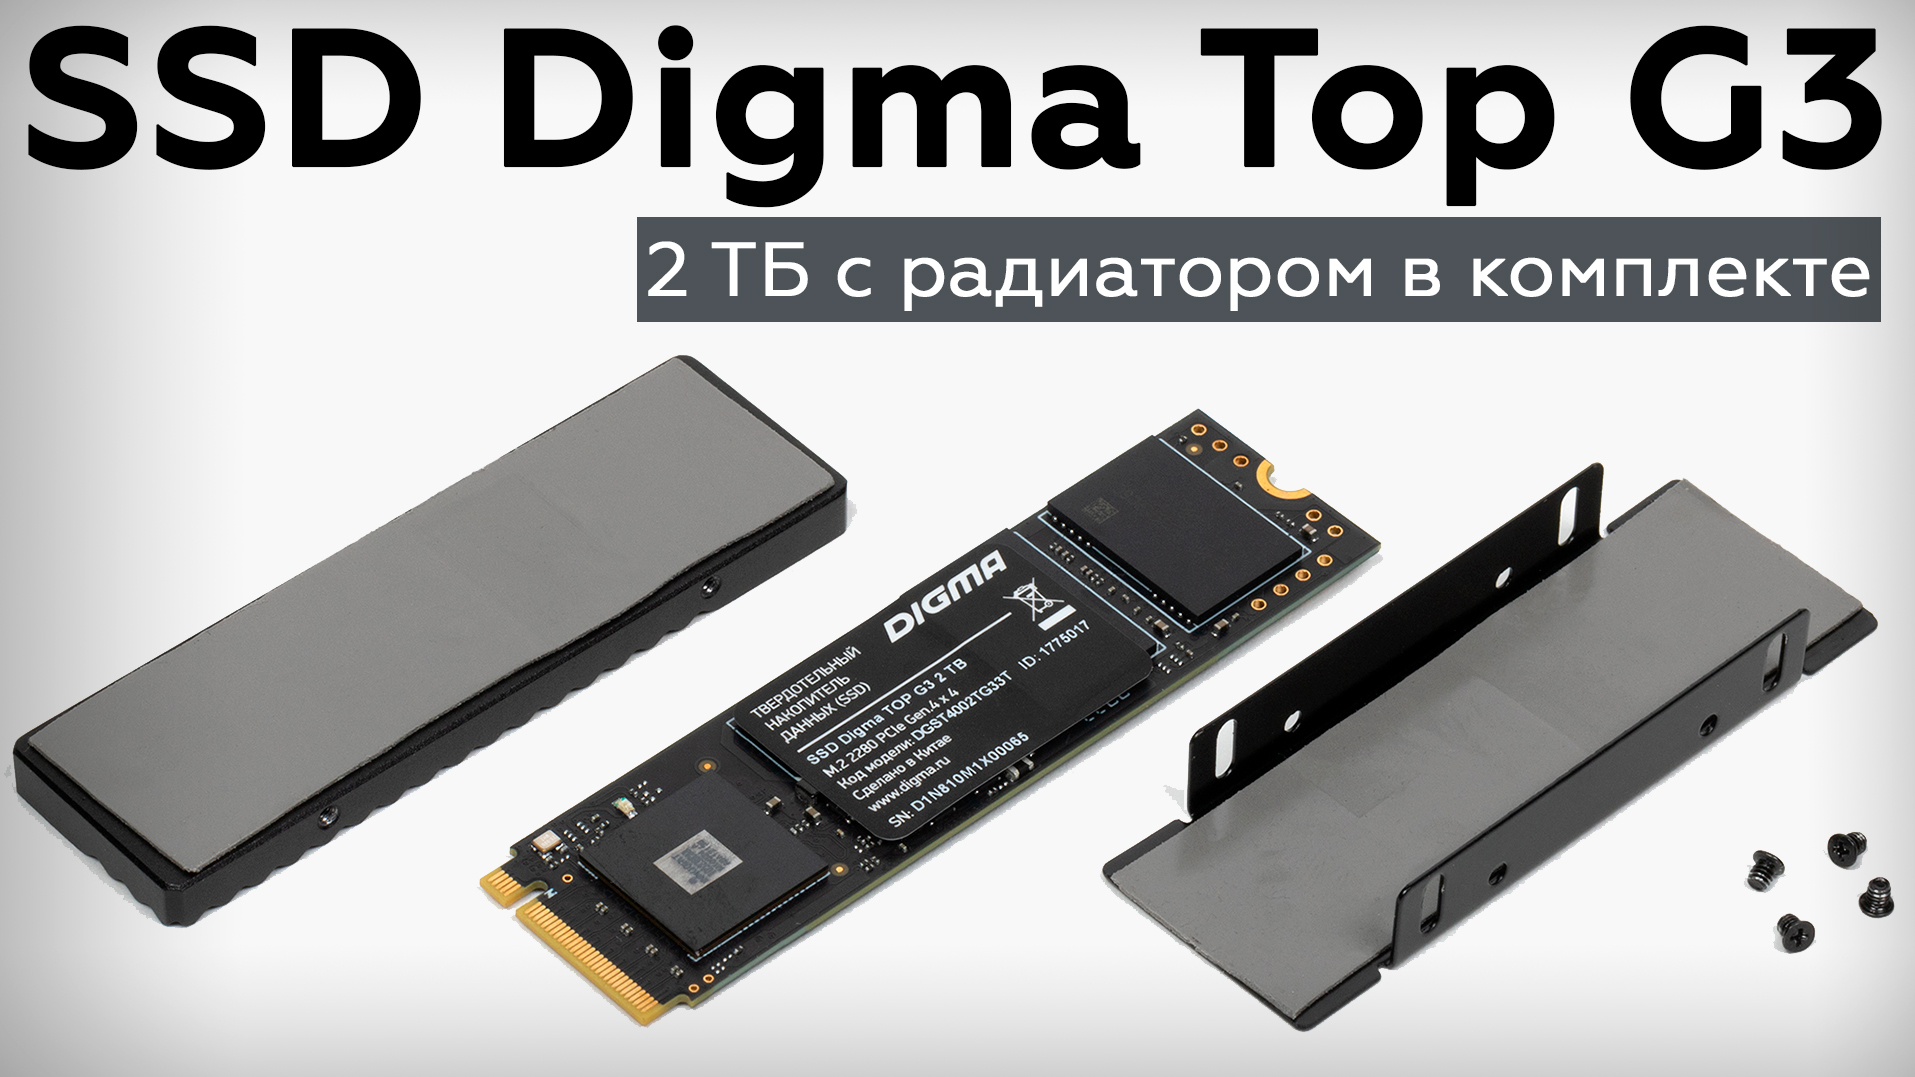 Обзор SSD Digma Top G3 2 ТБ с радиатором в комплекте